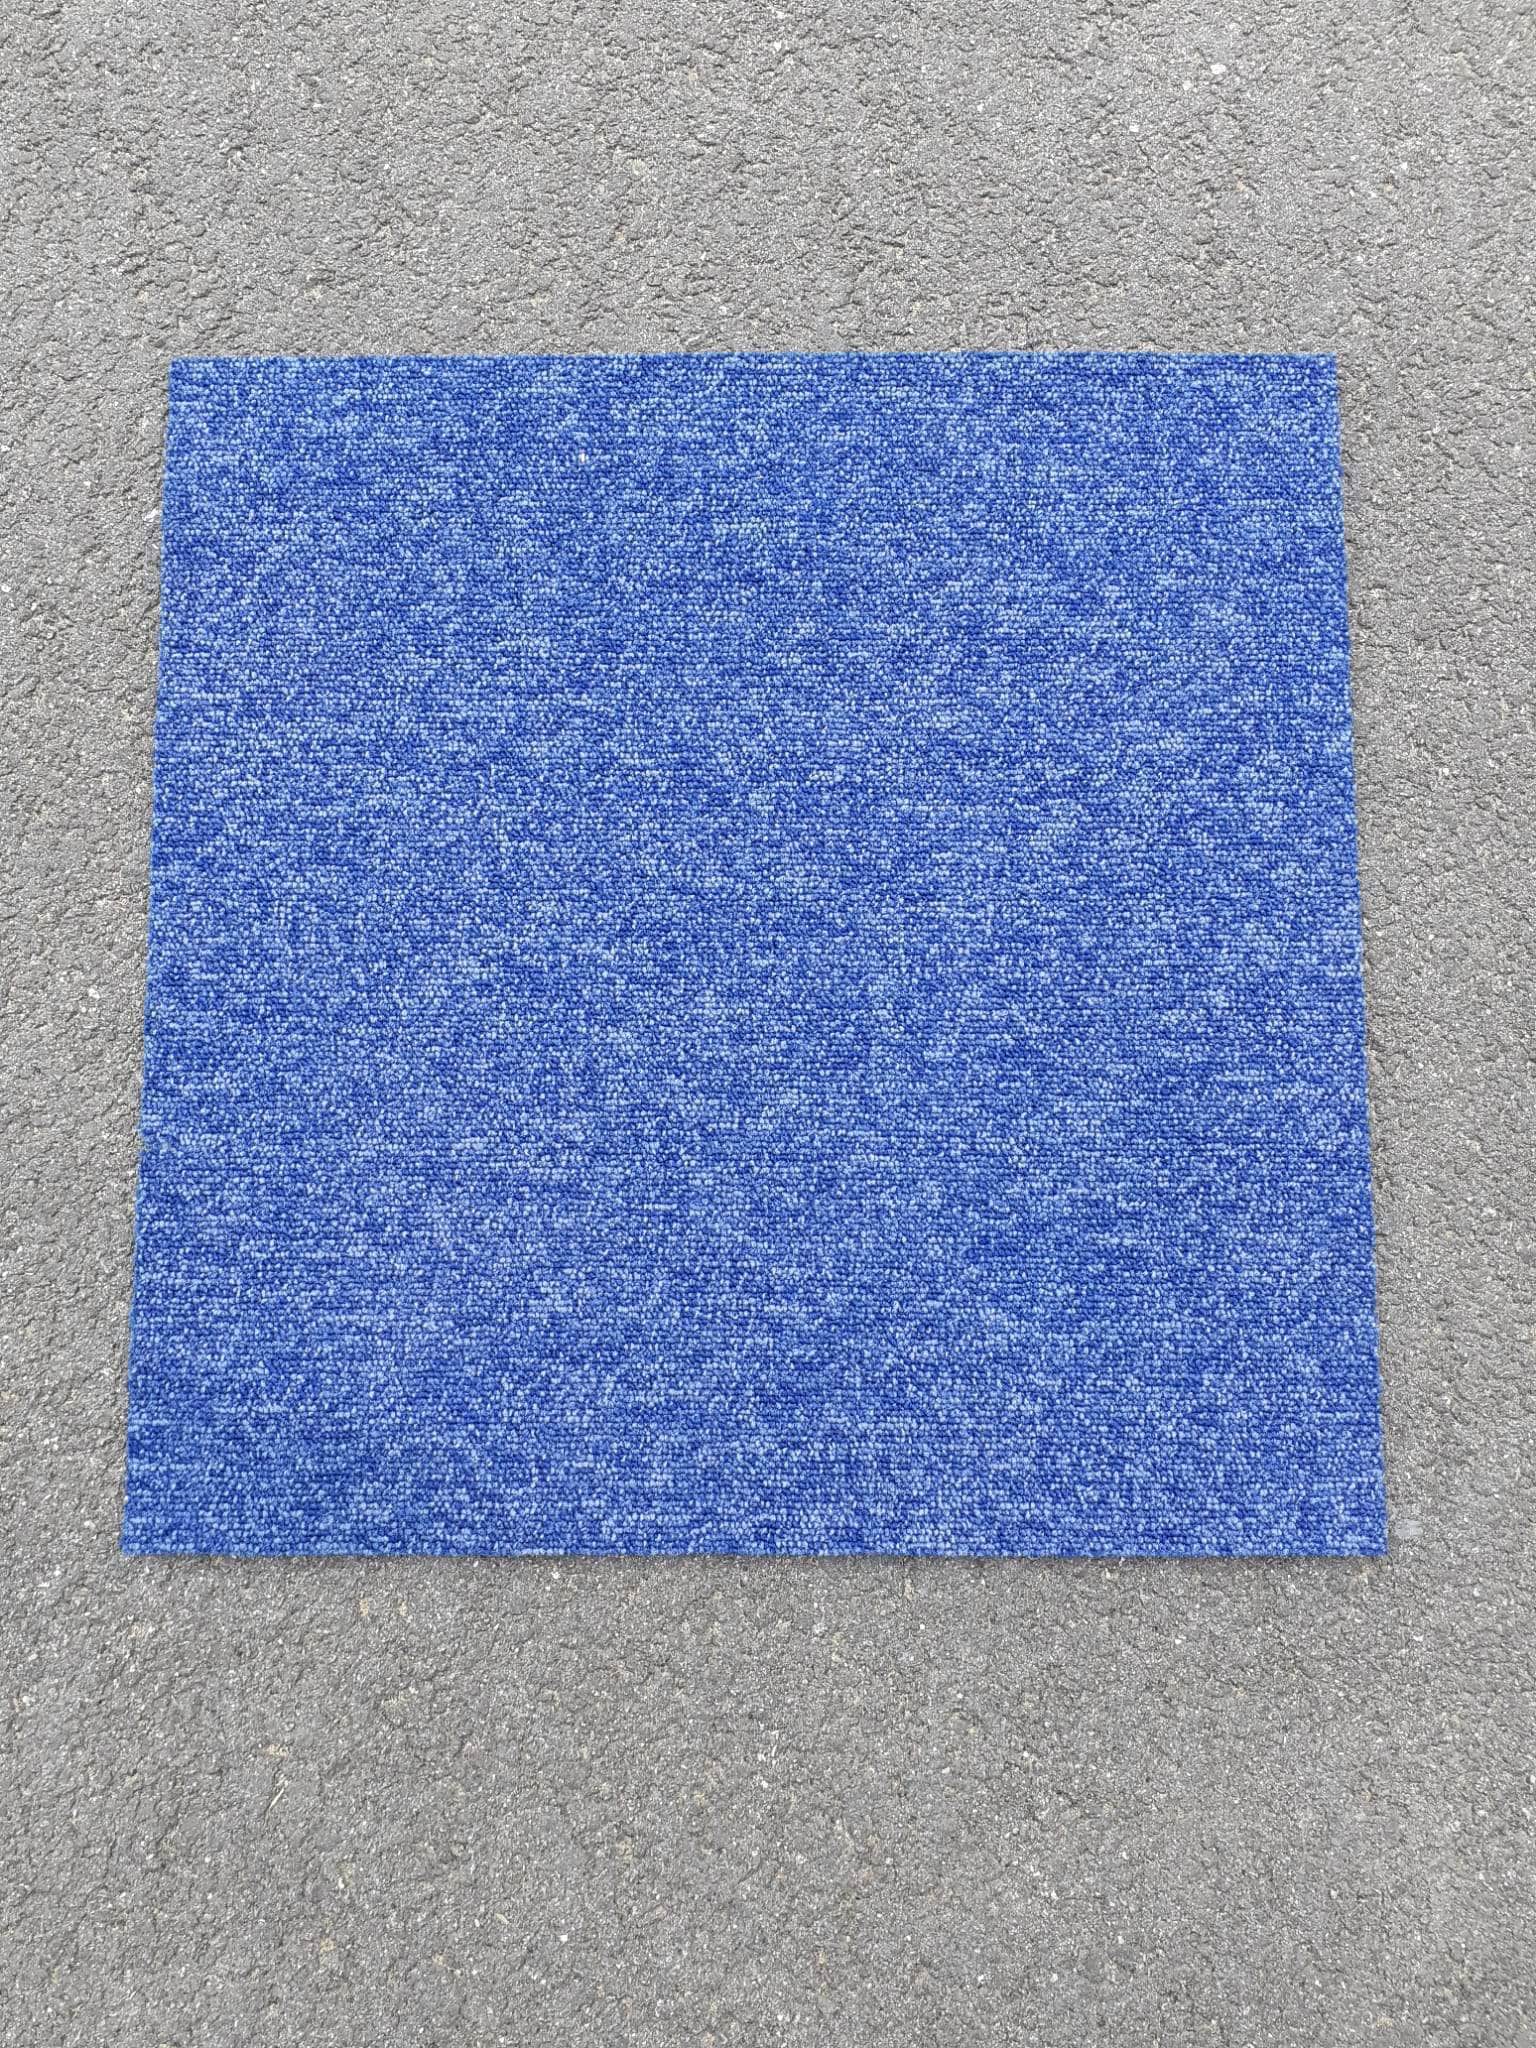 Réemploi  -  Dalle de moquette bleu gris 50x50 cm - 4€/m2 (réemploi)